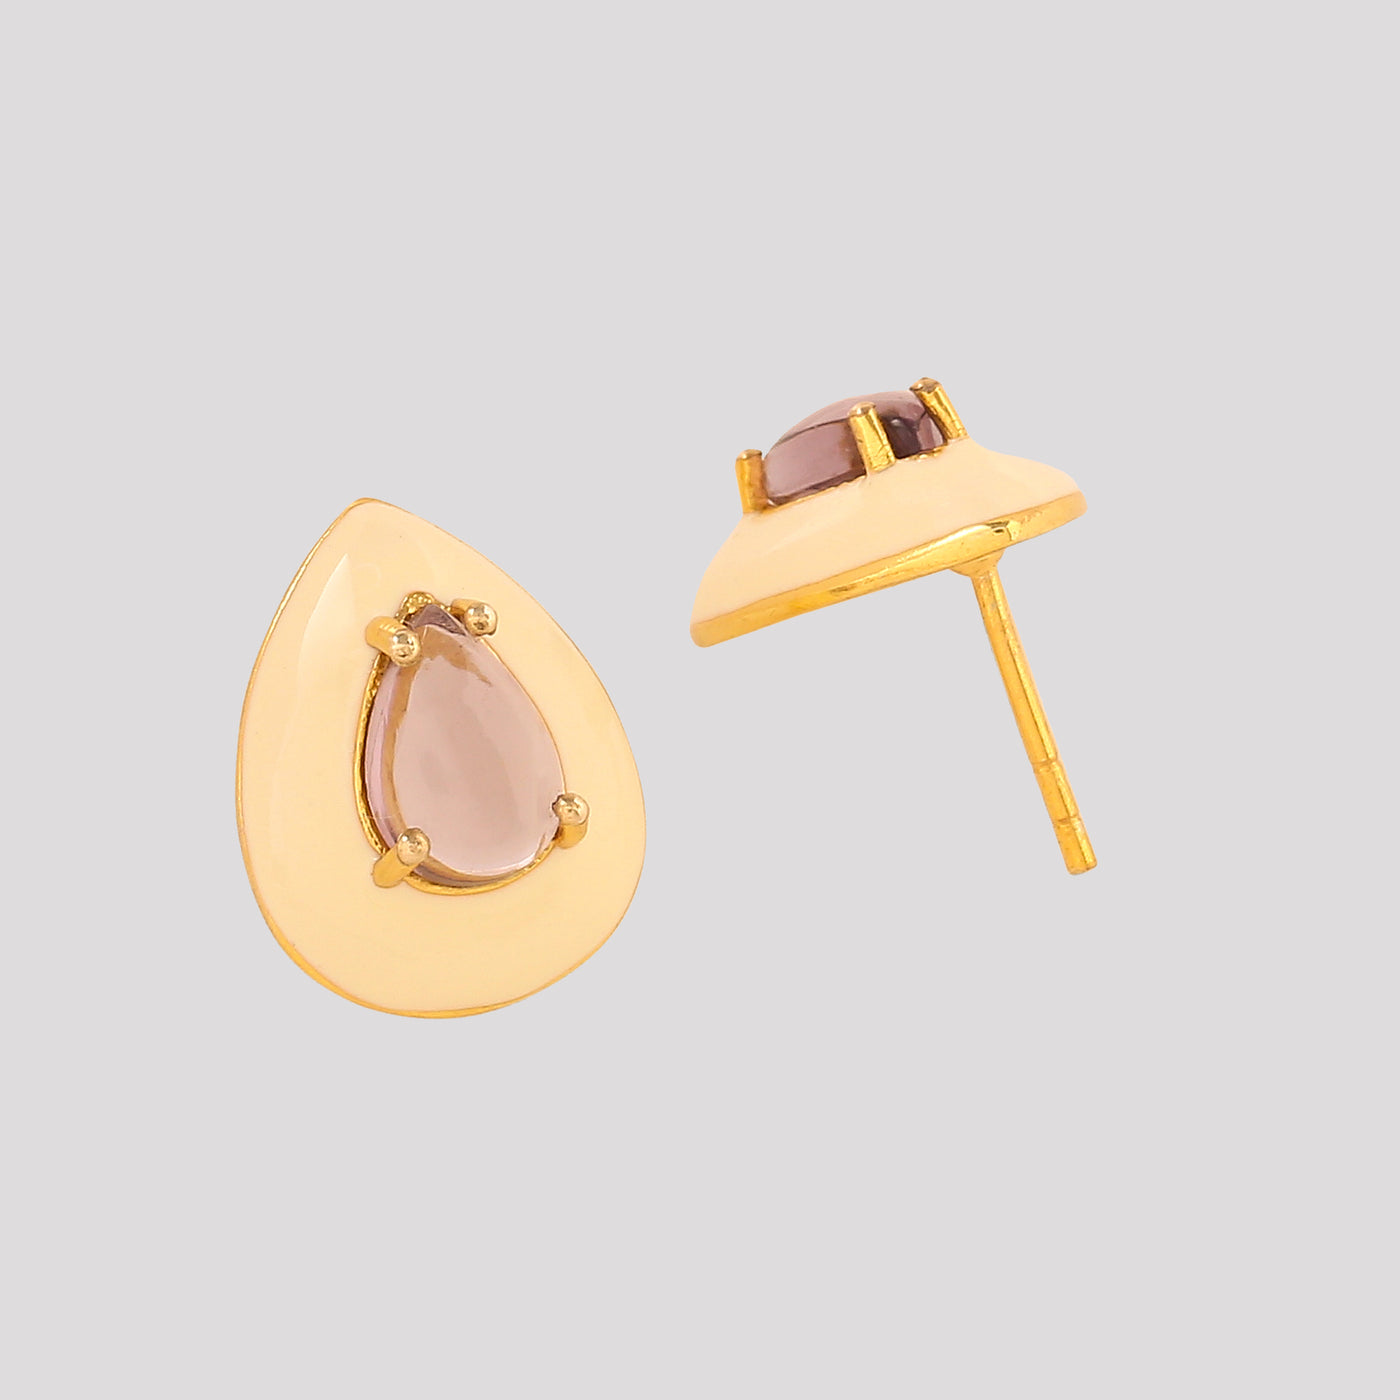 AZGA 22kt gold plated Brass Drop Earrings